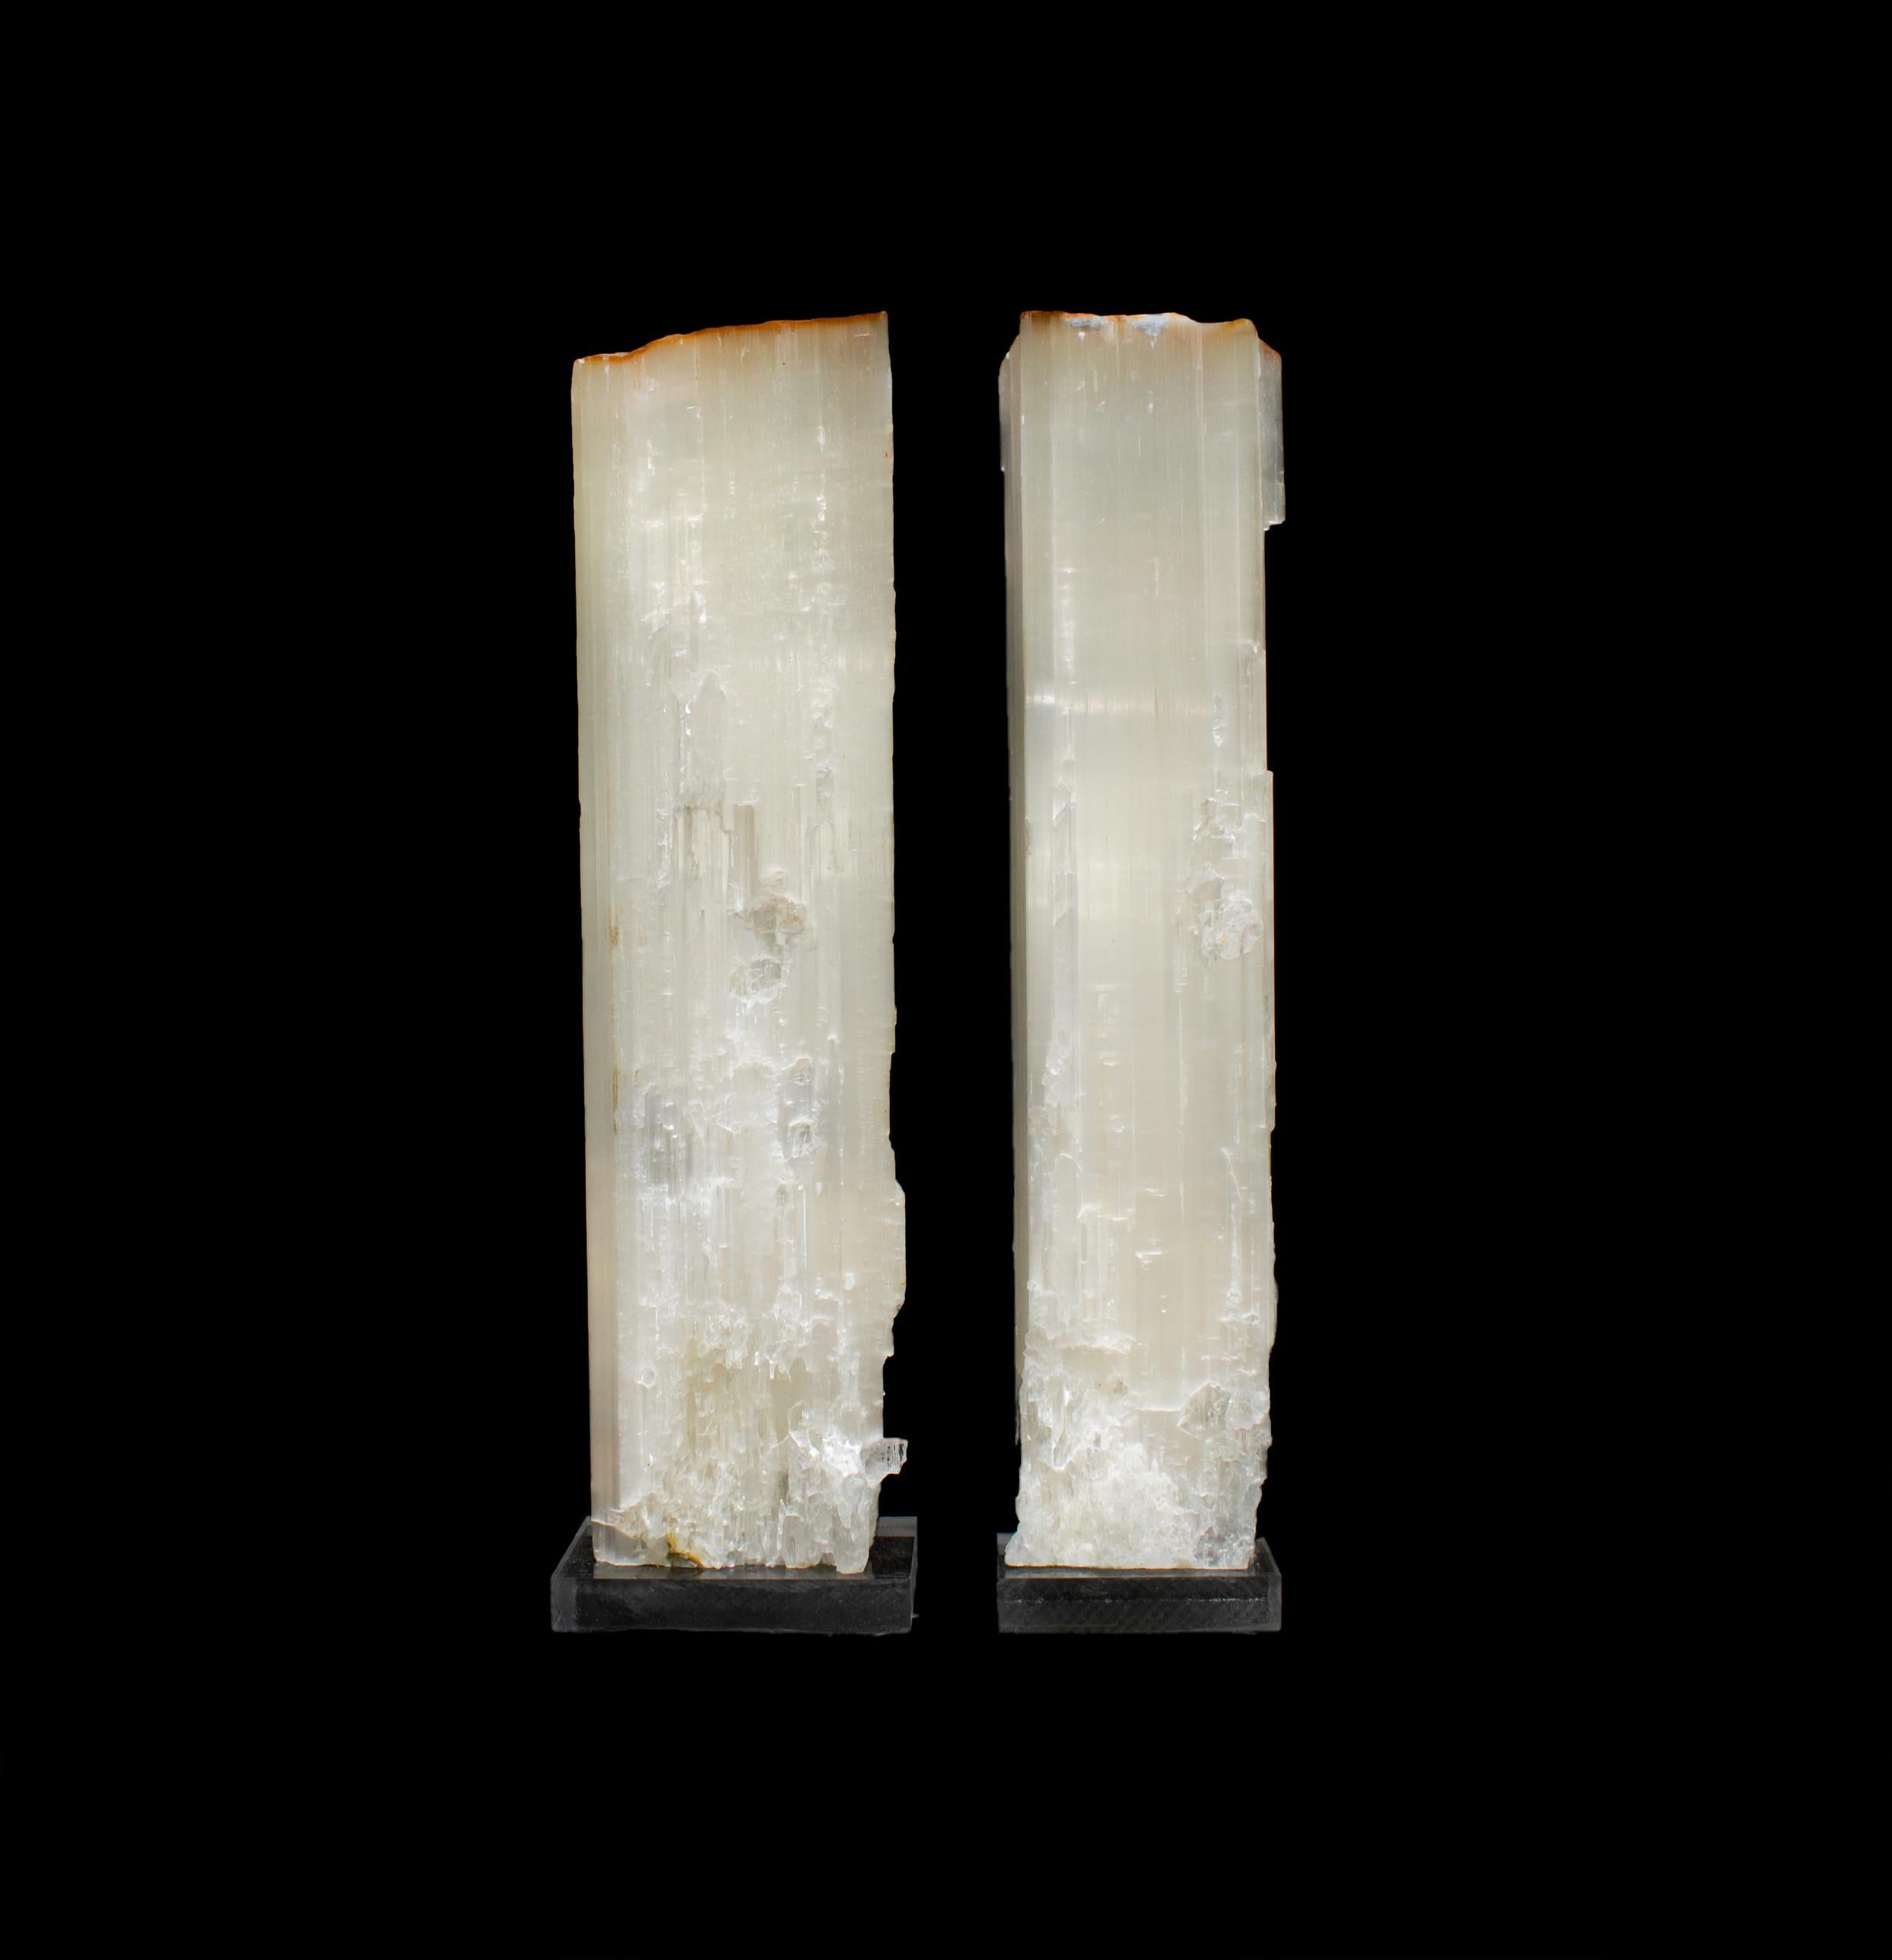 A pair of ruler selenite on lucite bases. Ruler selenite or 